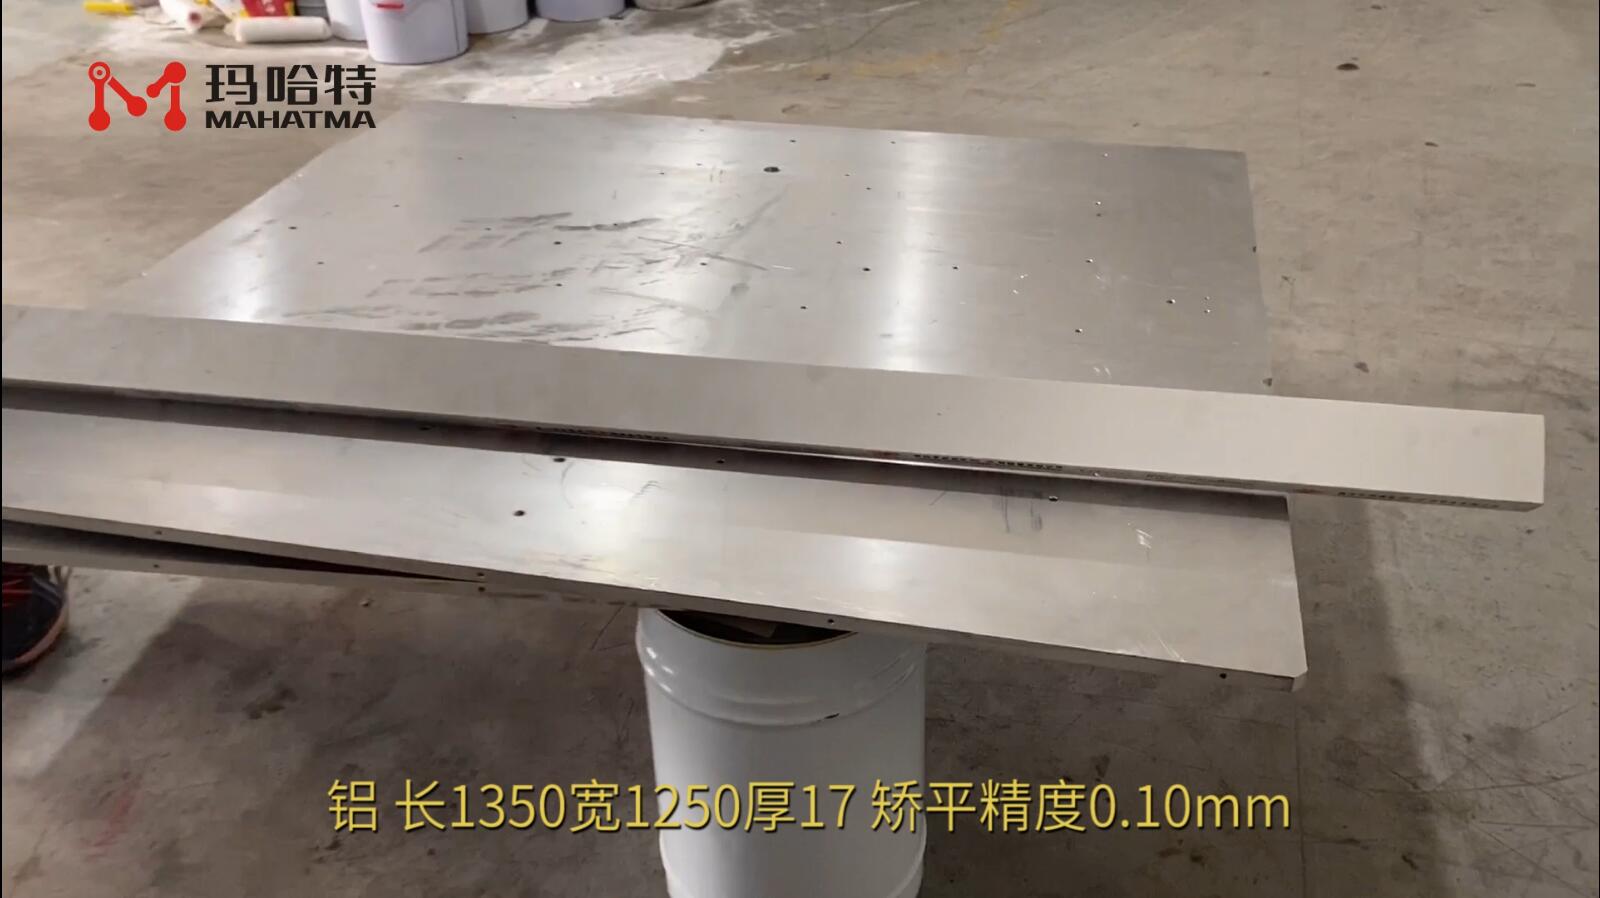 铝 MHT120-1300 长方形 长1350宽1250厚17mm